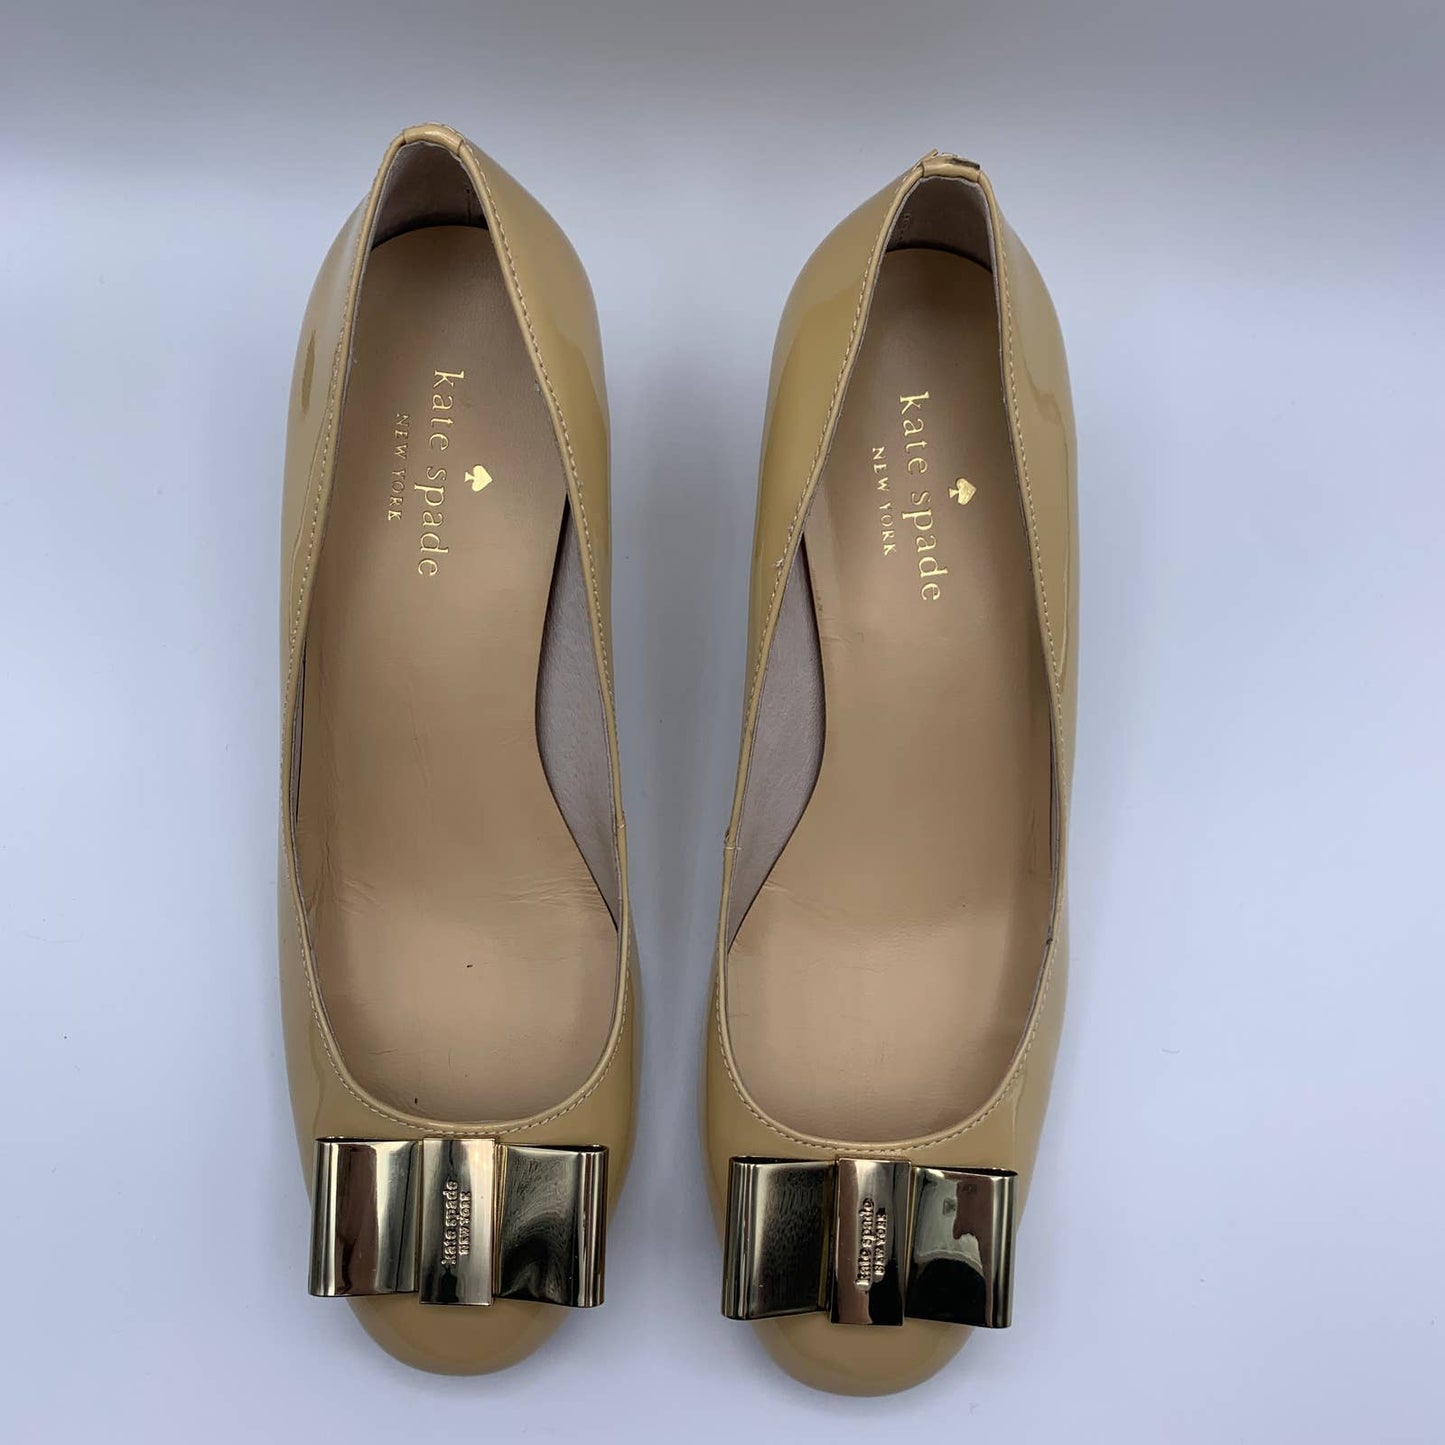 Dijon nude gold bow chunky kitten heels SZ 7